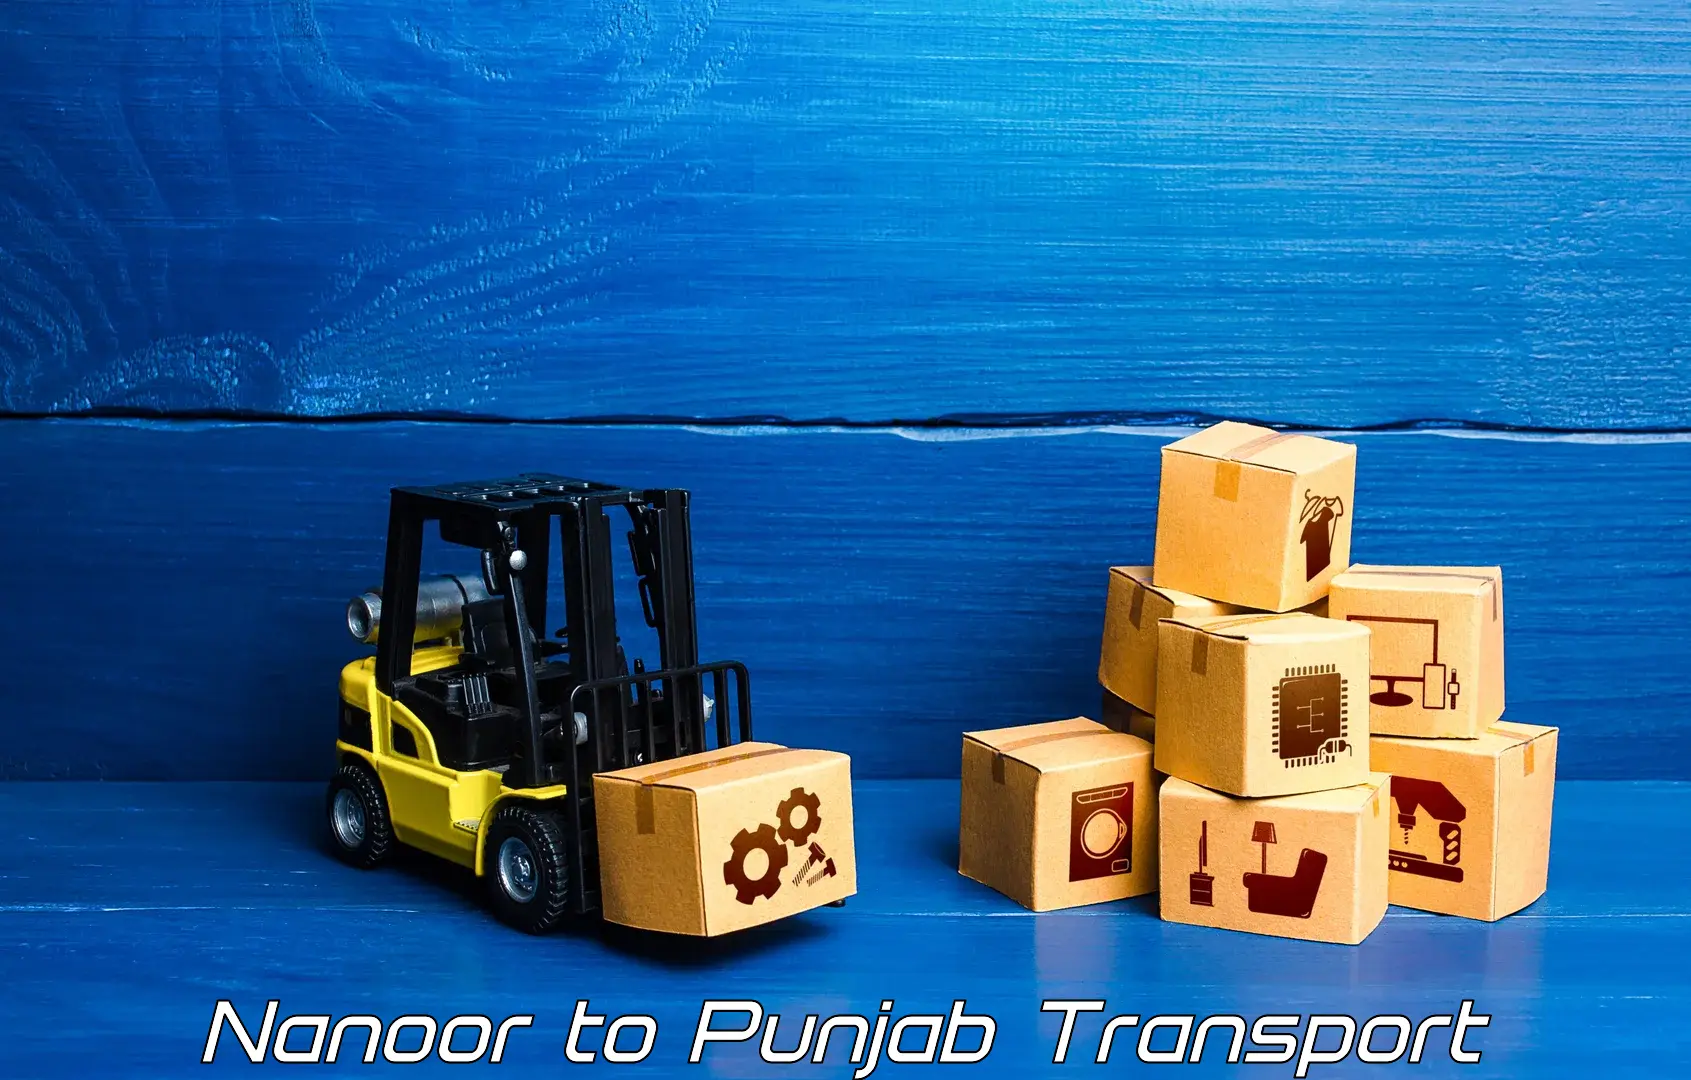 Furniture transport service in Nanoor to Punjab